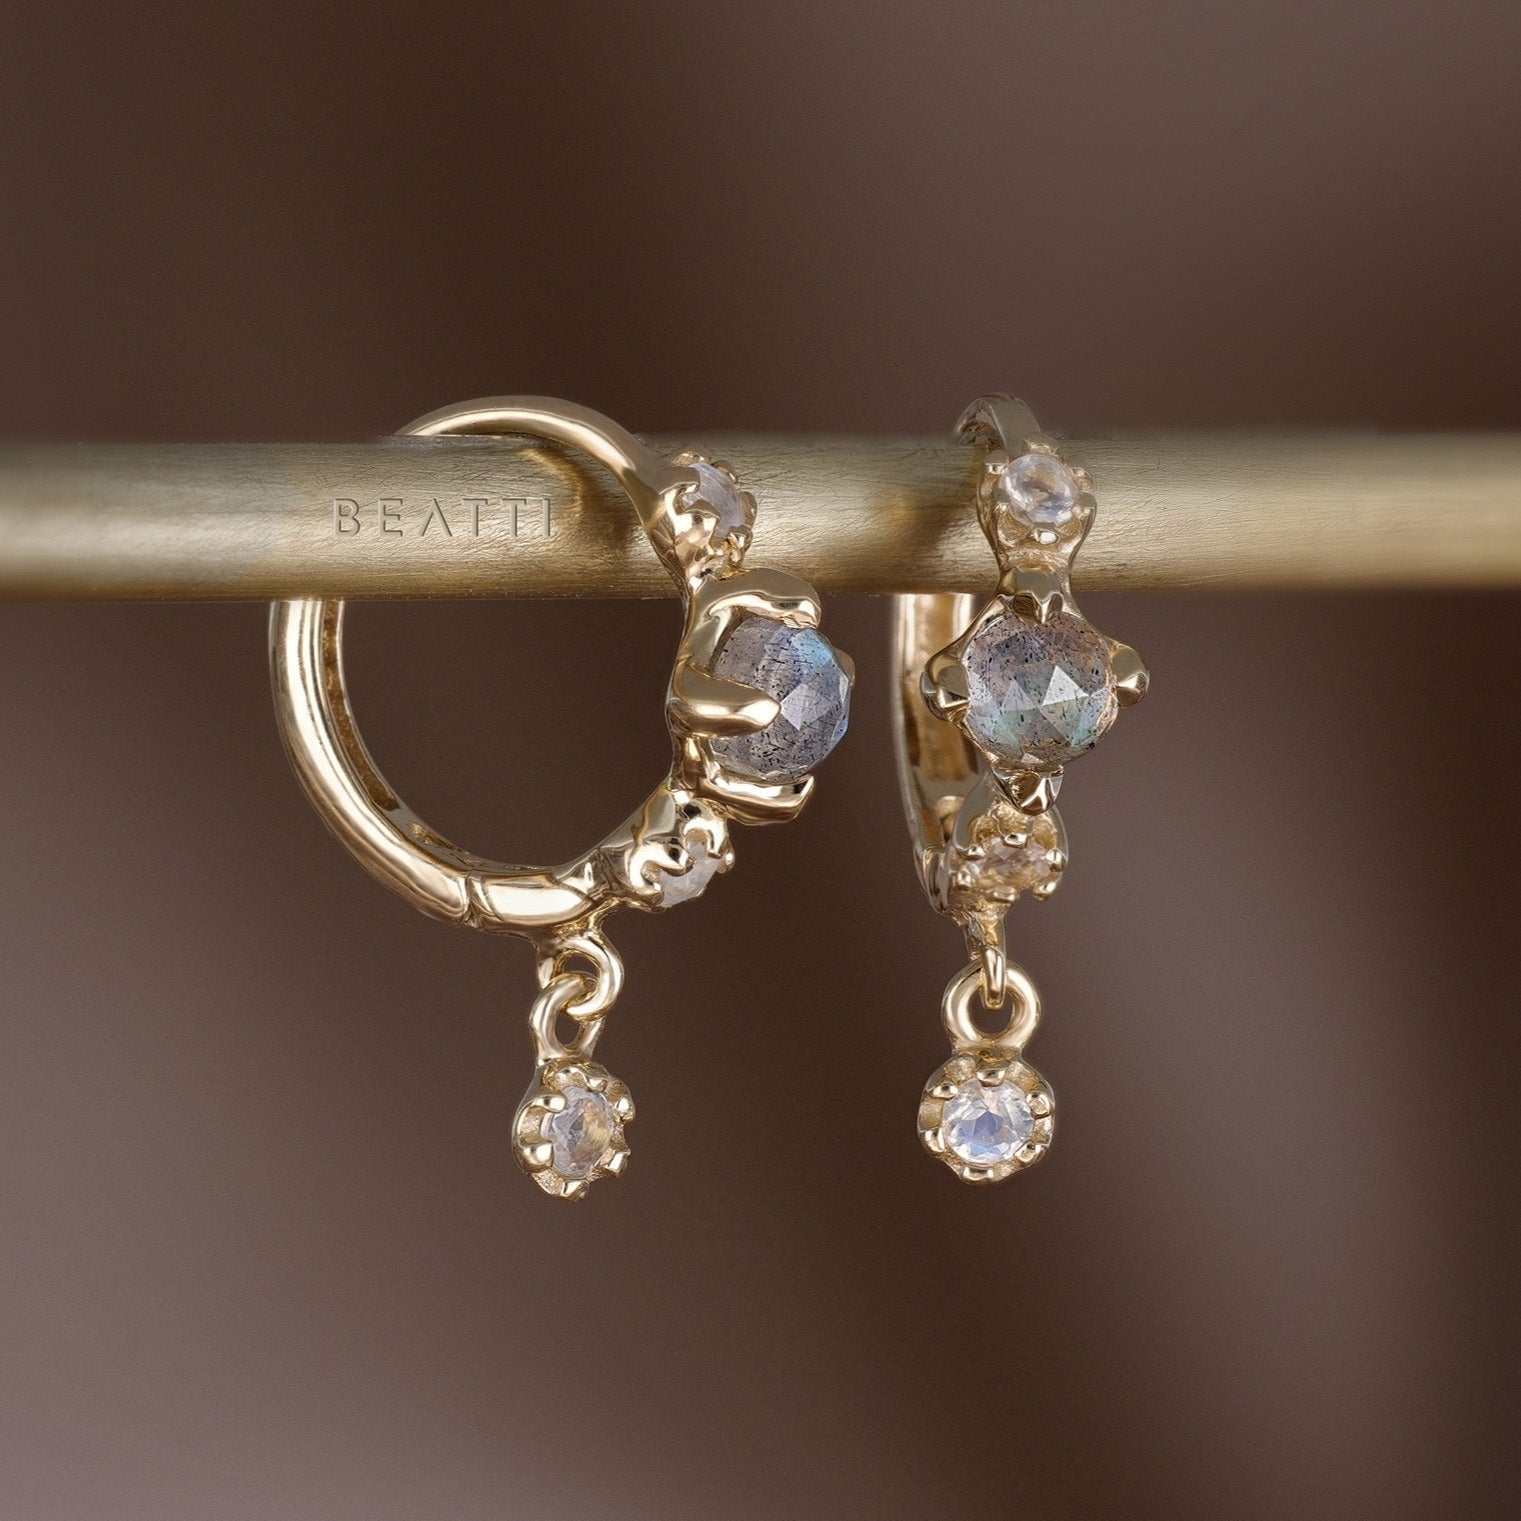 Lucine ‚Ä¢ Dainty Genuine Gemstone Hoop Earrings - BEATTI